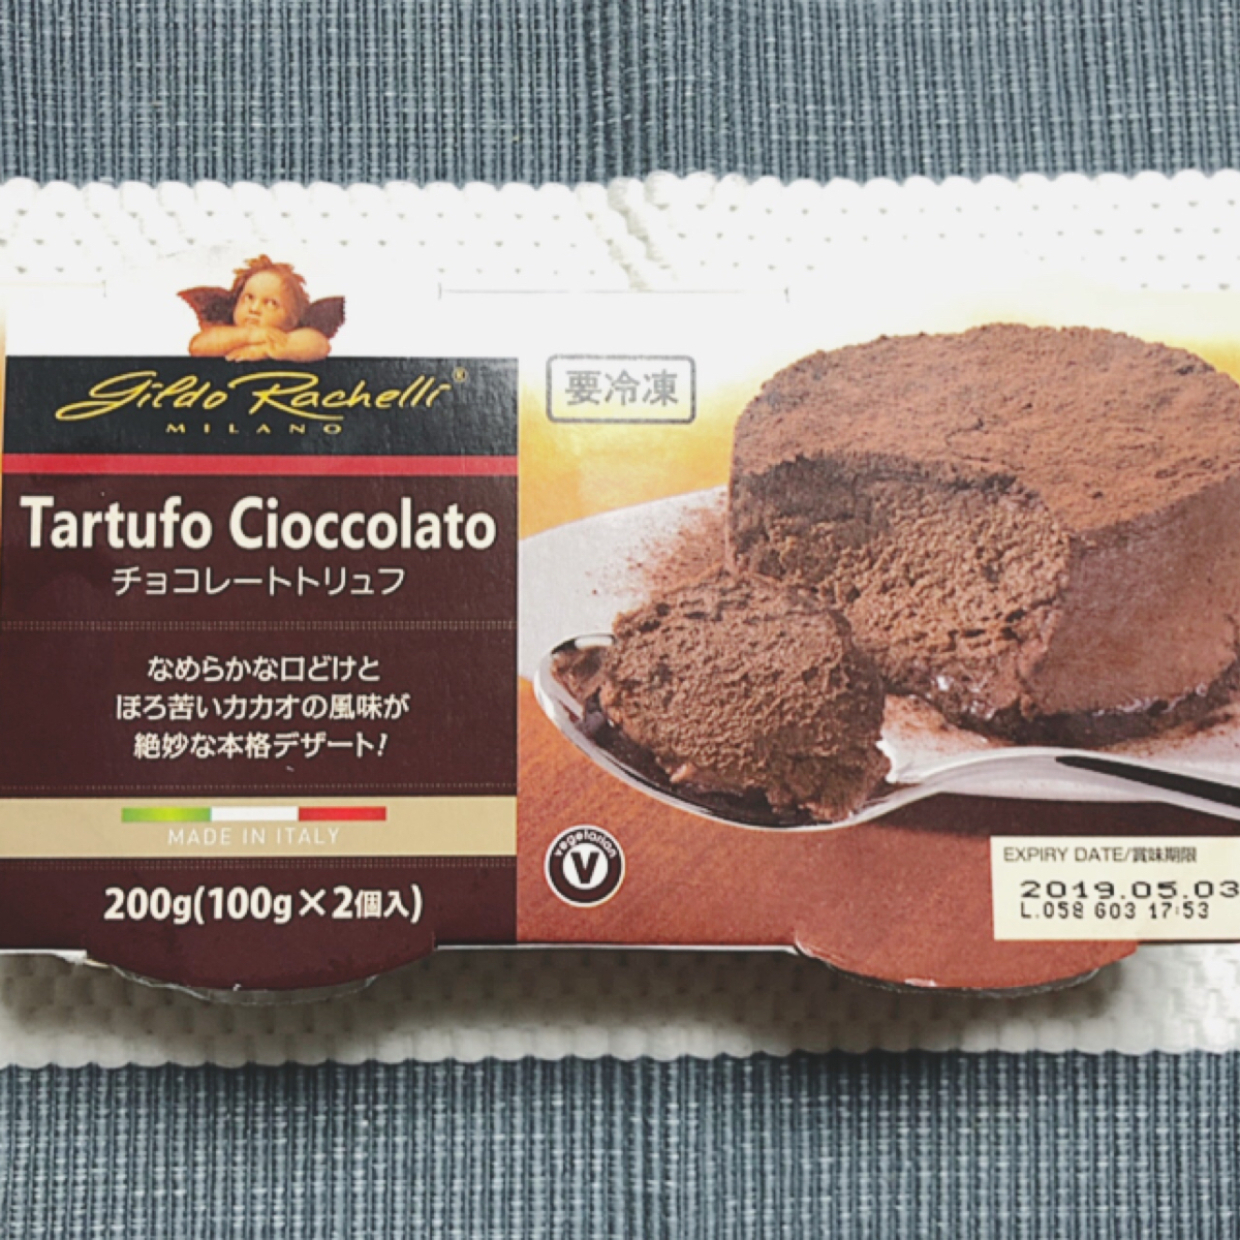  【業務スーパー】ふわっふわの濃厚チョコレートトリュフが美味しすぎる♡ 